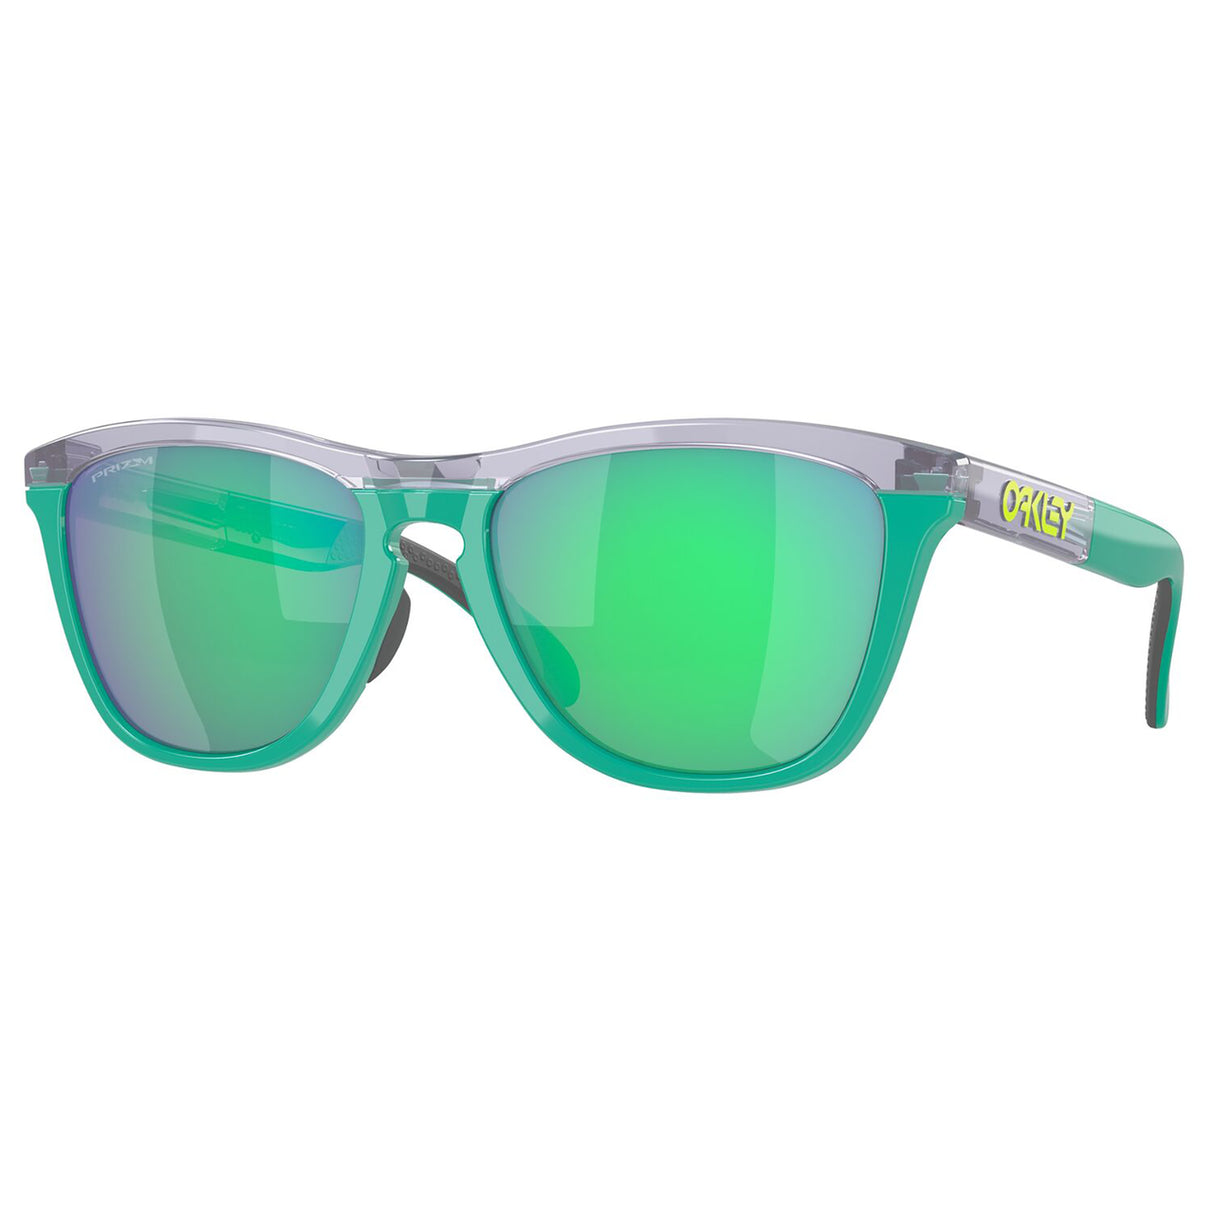 Oakley Frogskins Range Sunglasses (Trans Lilac/Celeste) Prizm Jade Lens